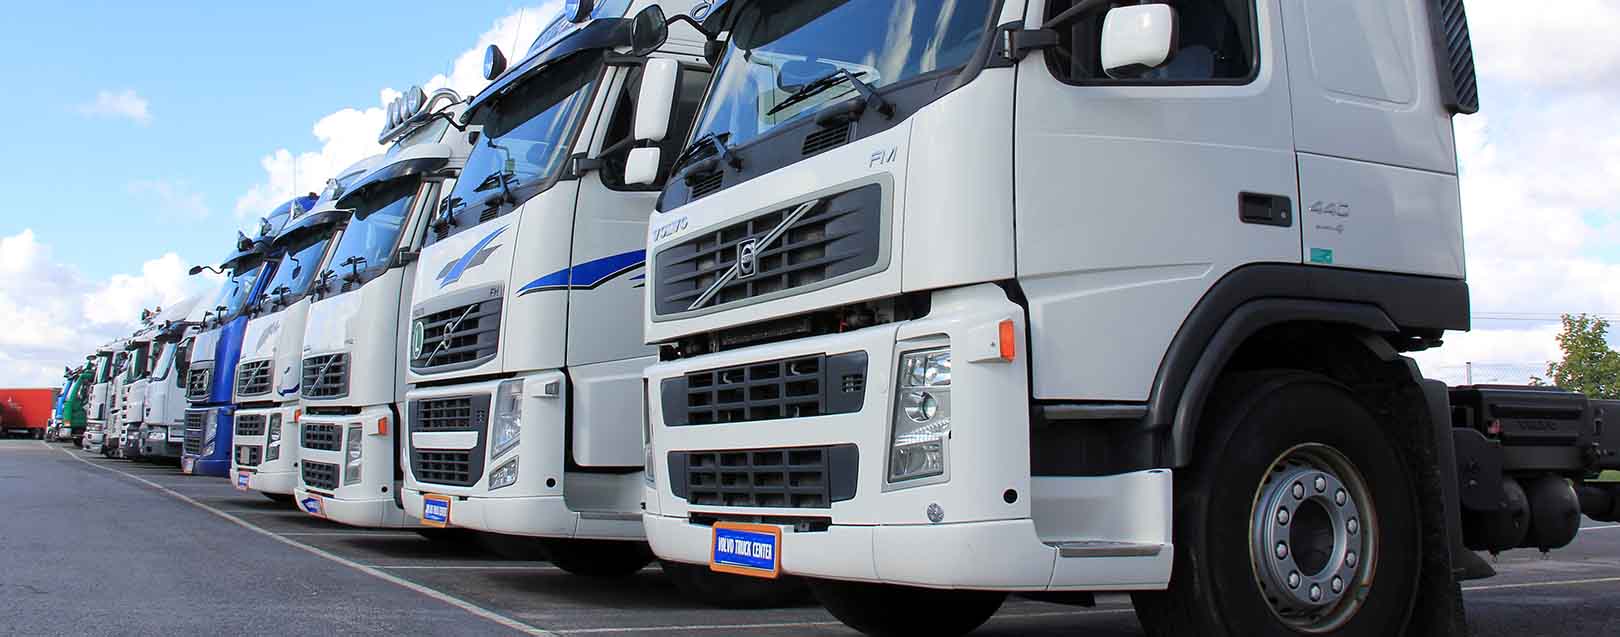 Mahindra plans to ship heavy, light trucks to Africa